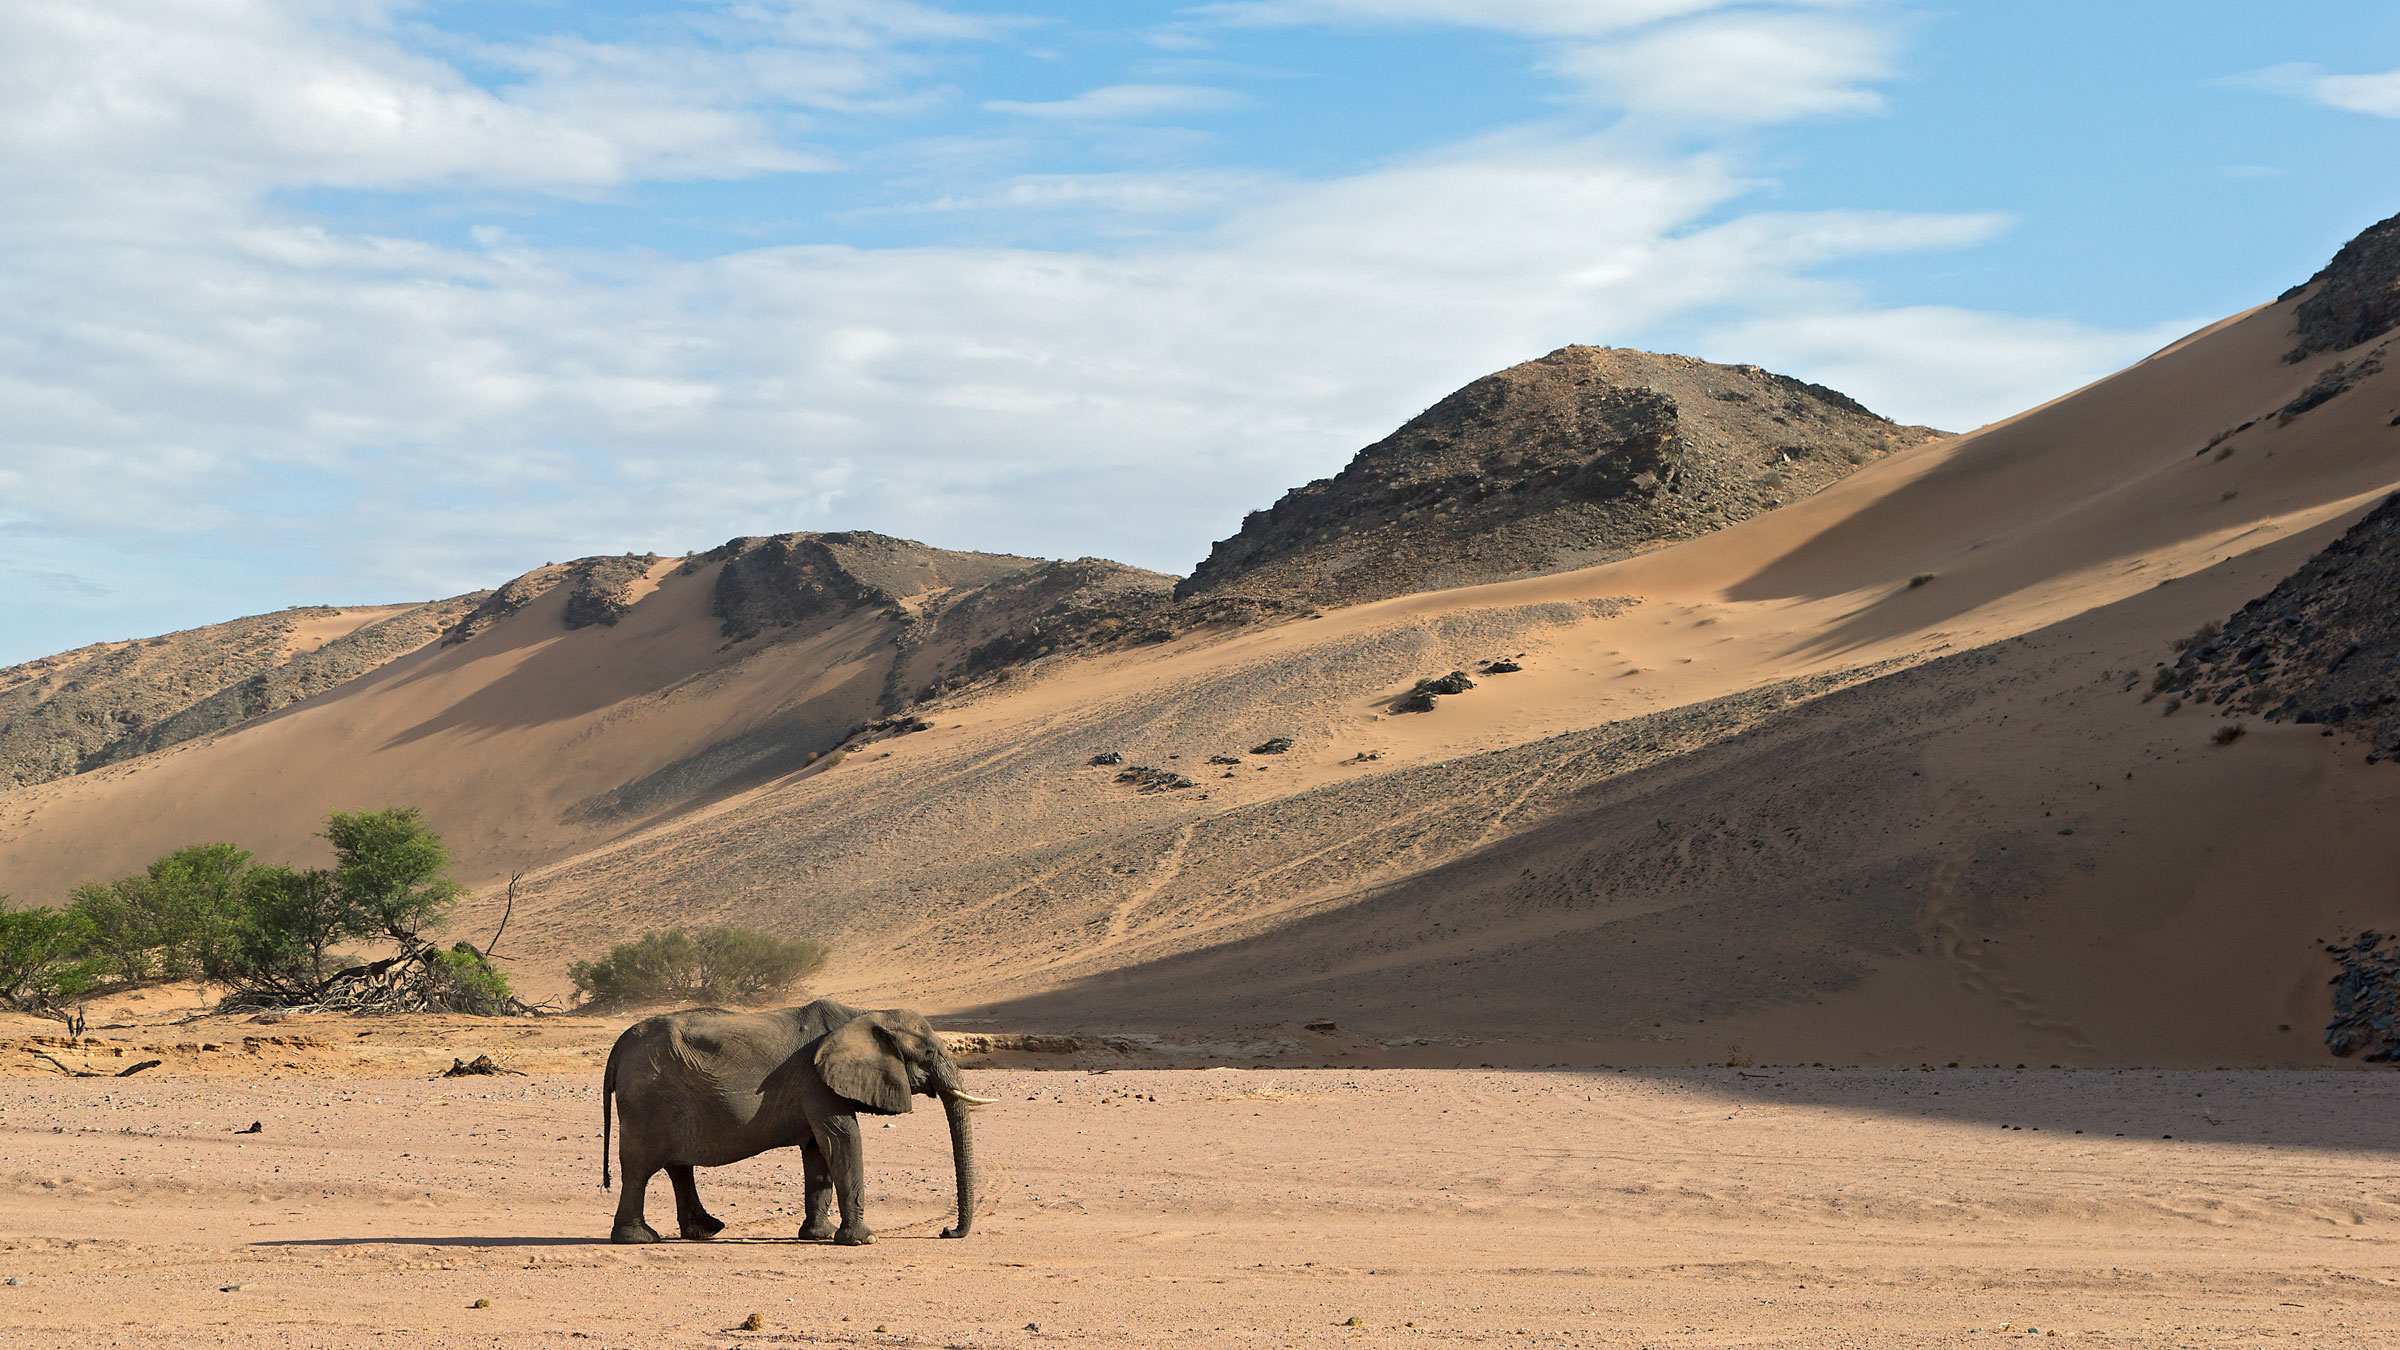 The desert Elephants...